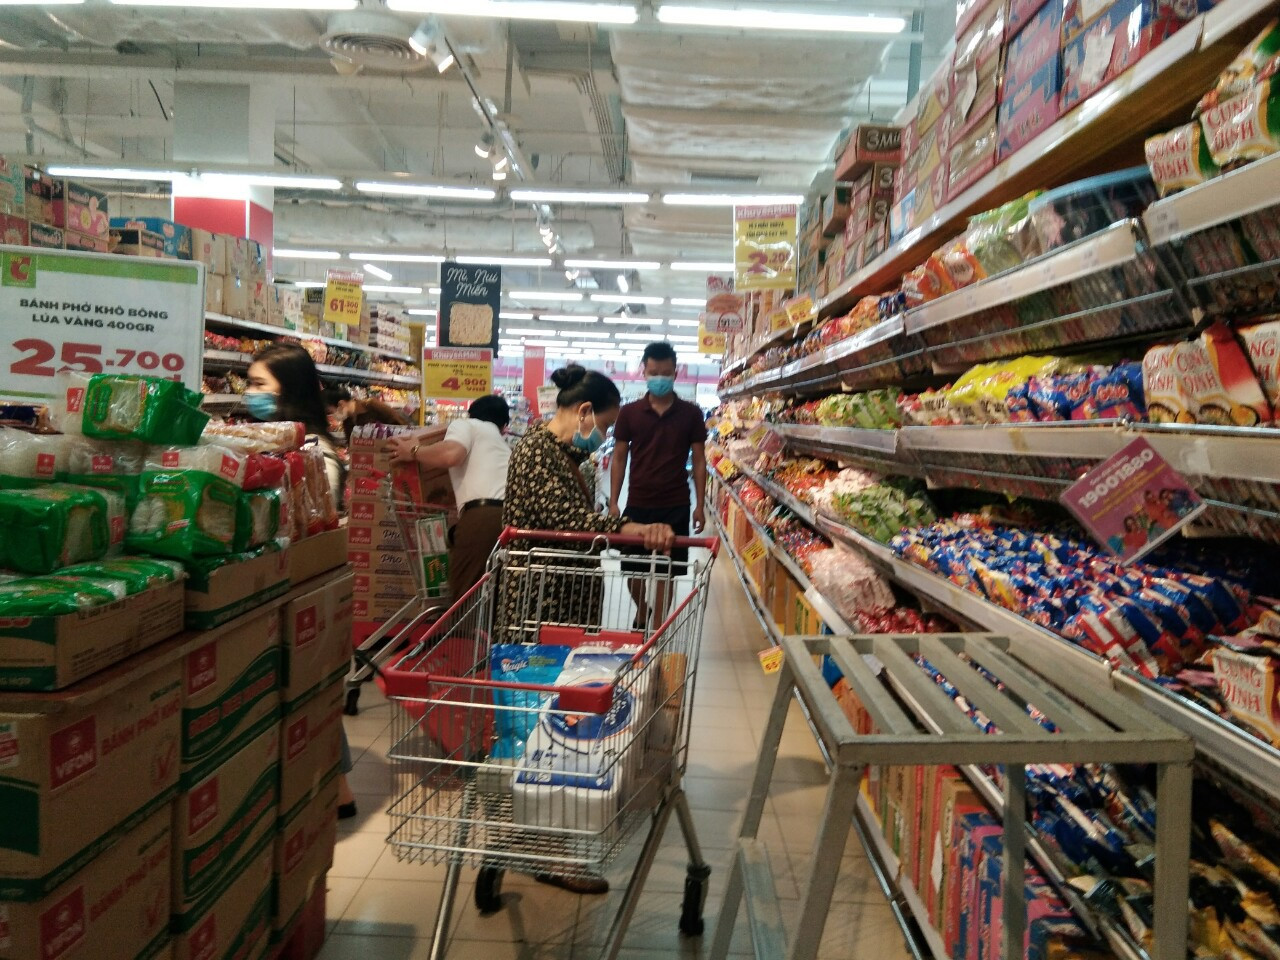 Tại siêu thị, lượng hàng hóa đang rất dồi dào. Ảnh: Thanh Phúc